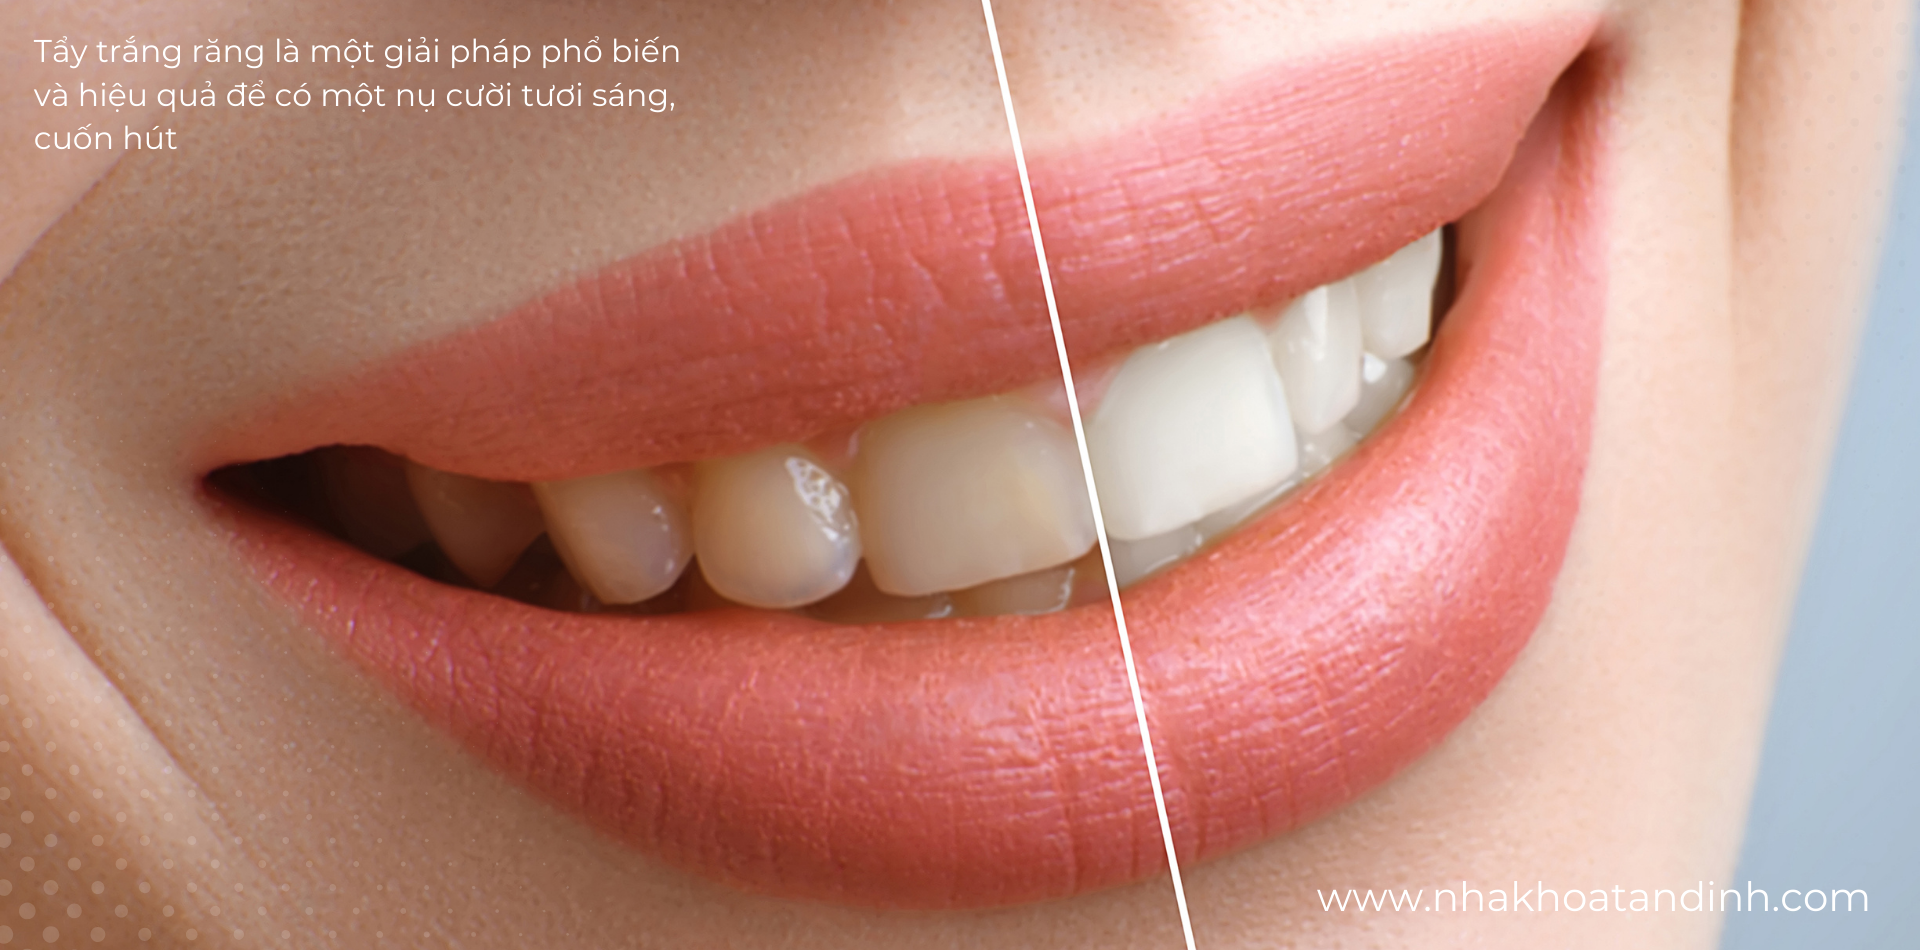 Tẩy trắng răng là một phương pháp hiệu quả để loại bỏ nhiễm màu và làm sáng răng.